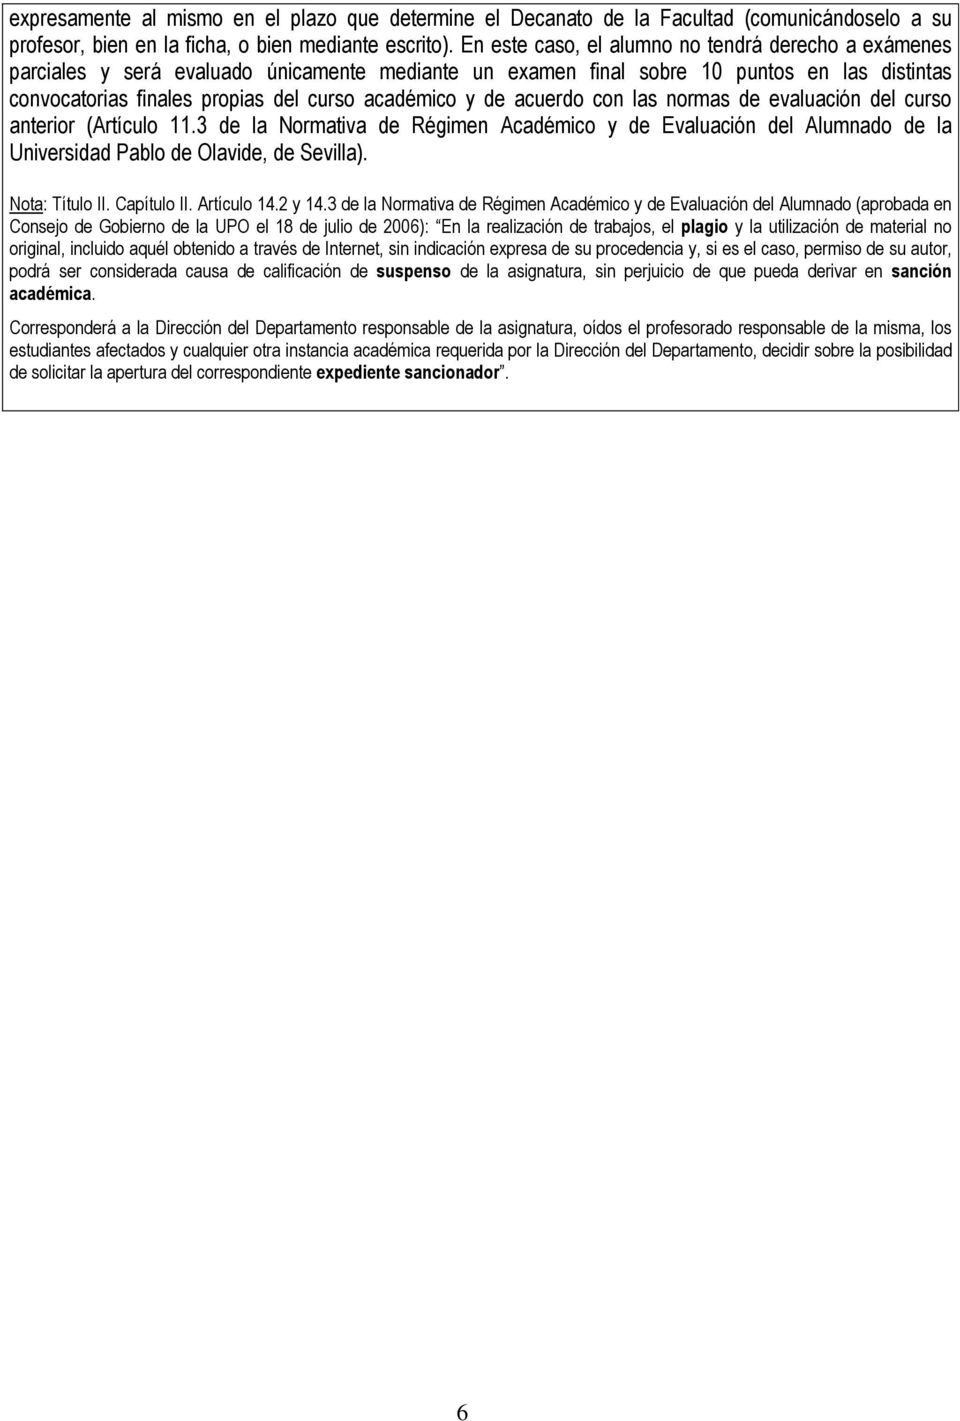 de acuerdo con las normas de evaluación del curso anterior (Artículo 11.3 de la Normativa de Régimen Académico y de Evaluación del Alumnado de la Universidad Pablo de Olavide, de Sevilla).